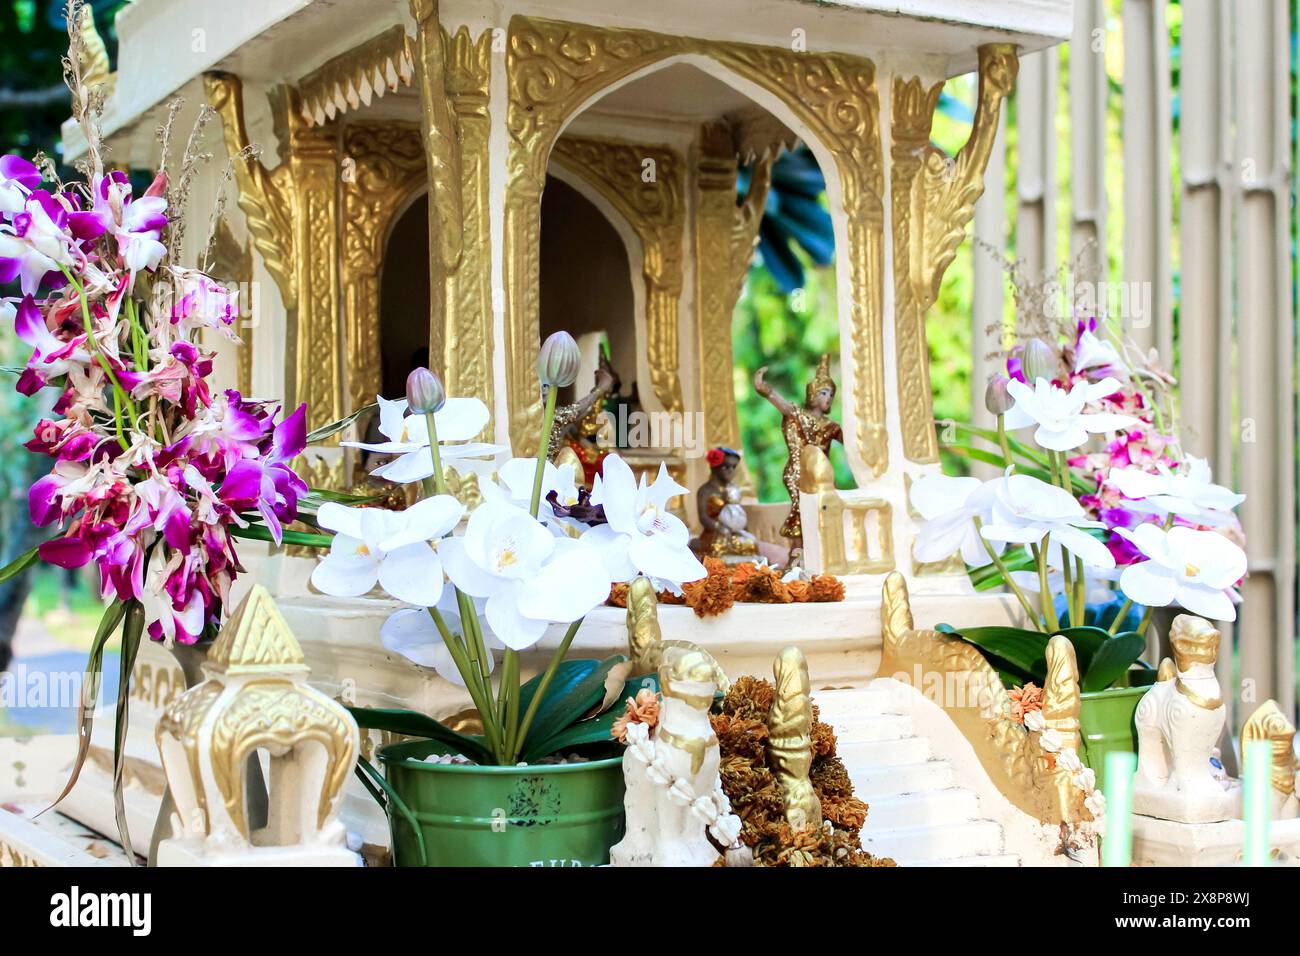 Un santuario nel giardino, adornato di fiori e statue, favorisce un ambiente tranquillo e spirituale Foto Stock